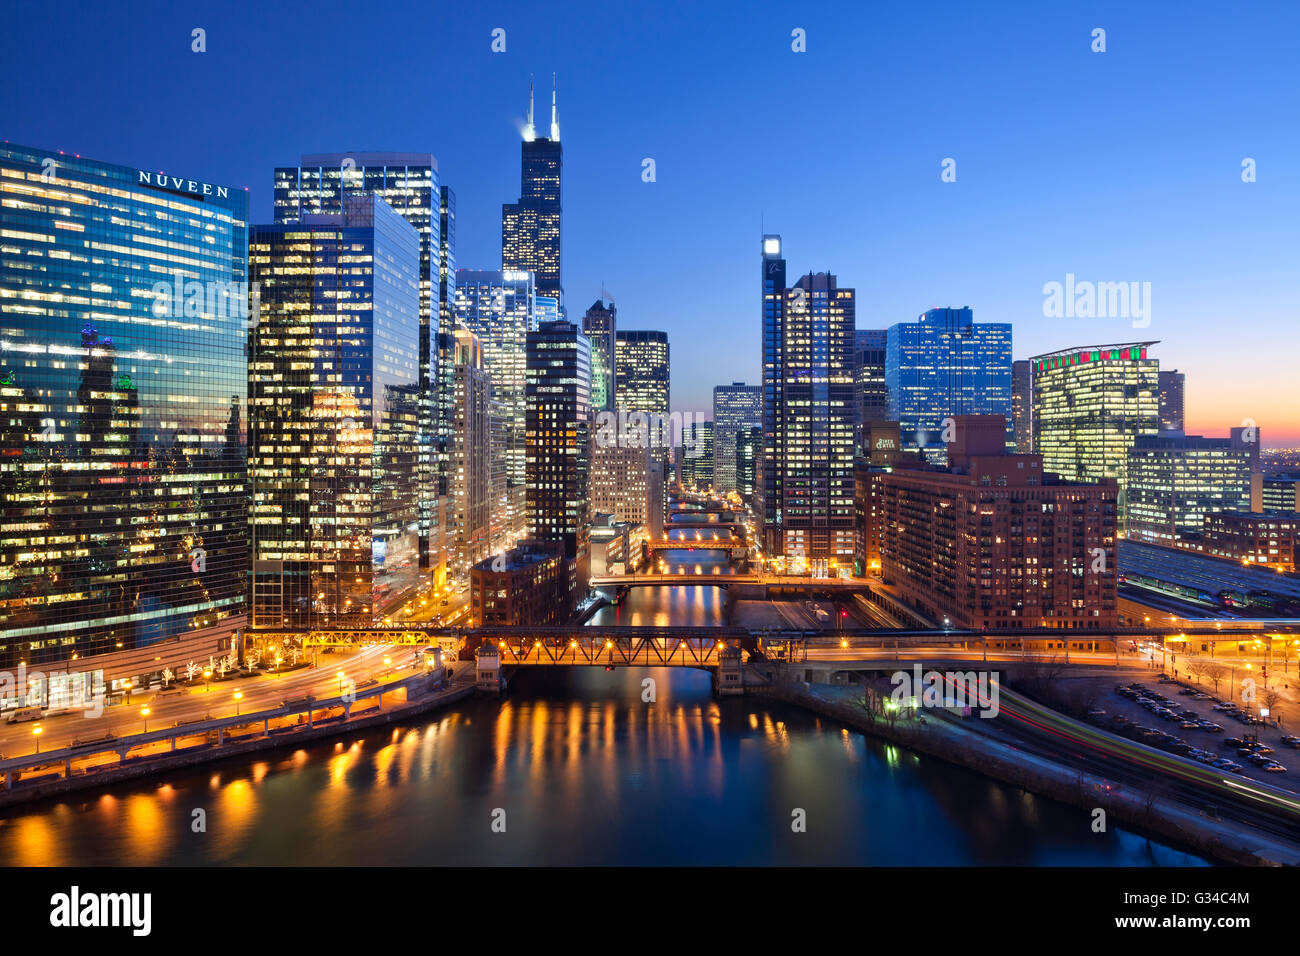 Ville de Chicago. image de centre-ville de Chicago et Chicago River avec les ponts pendant le coucher du soleil. Banque D'Images